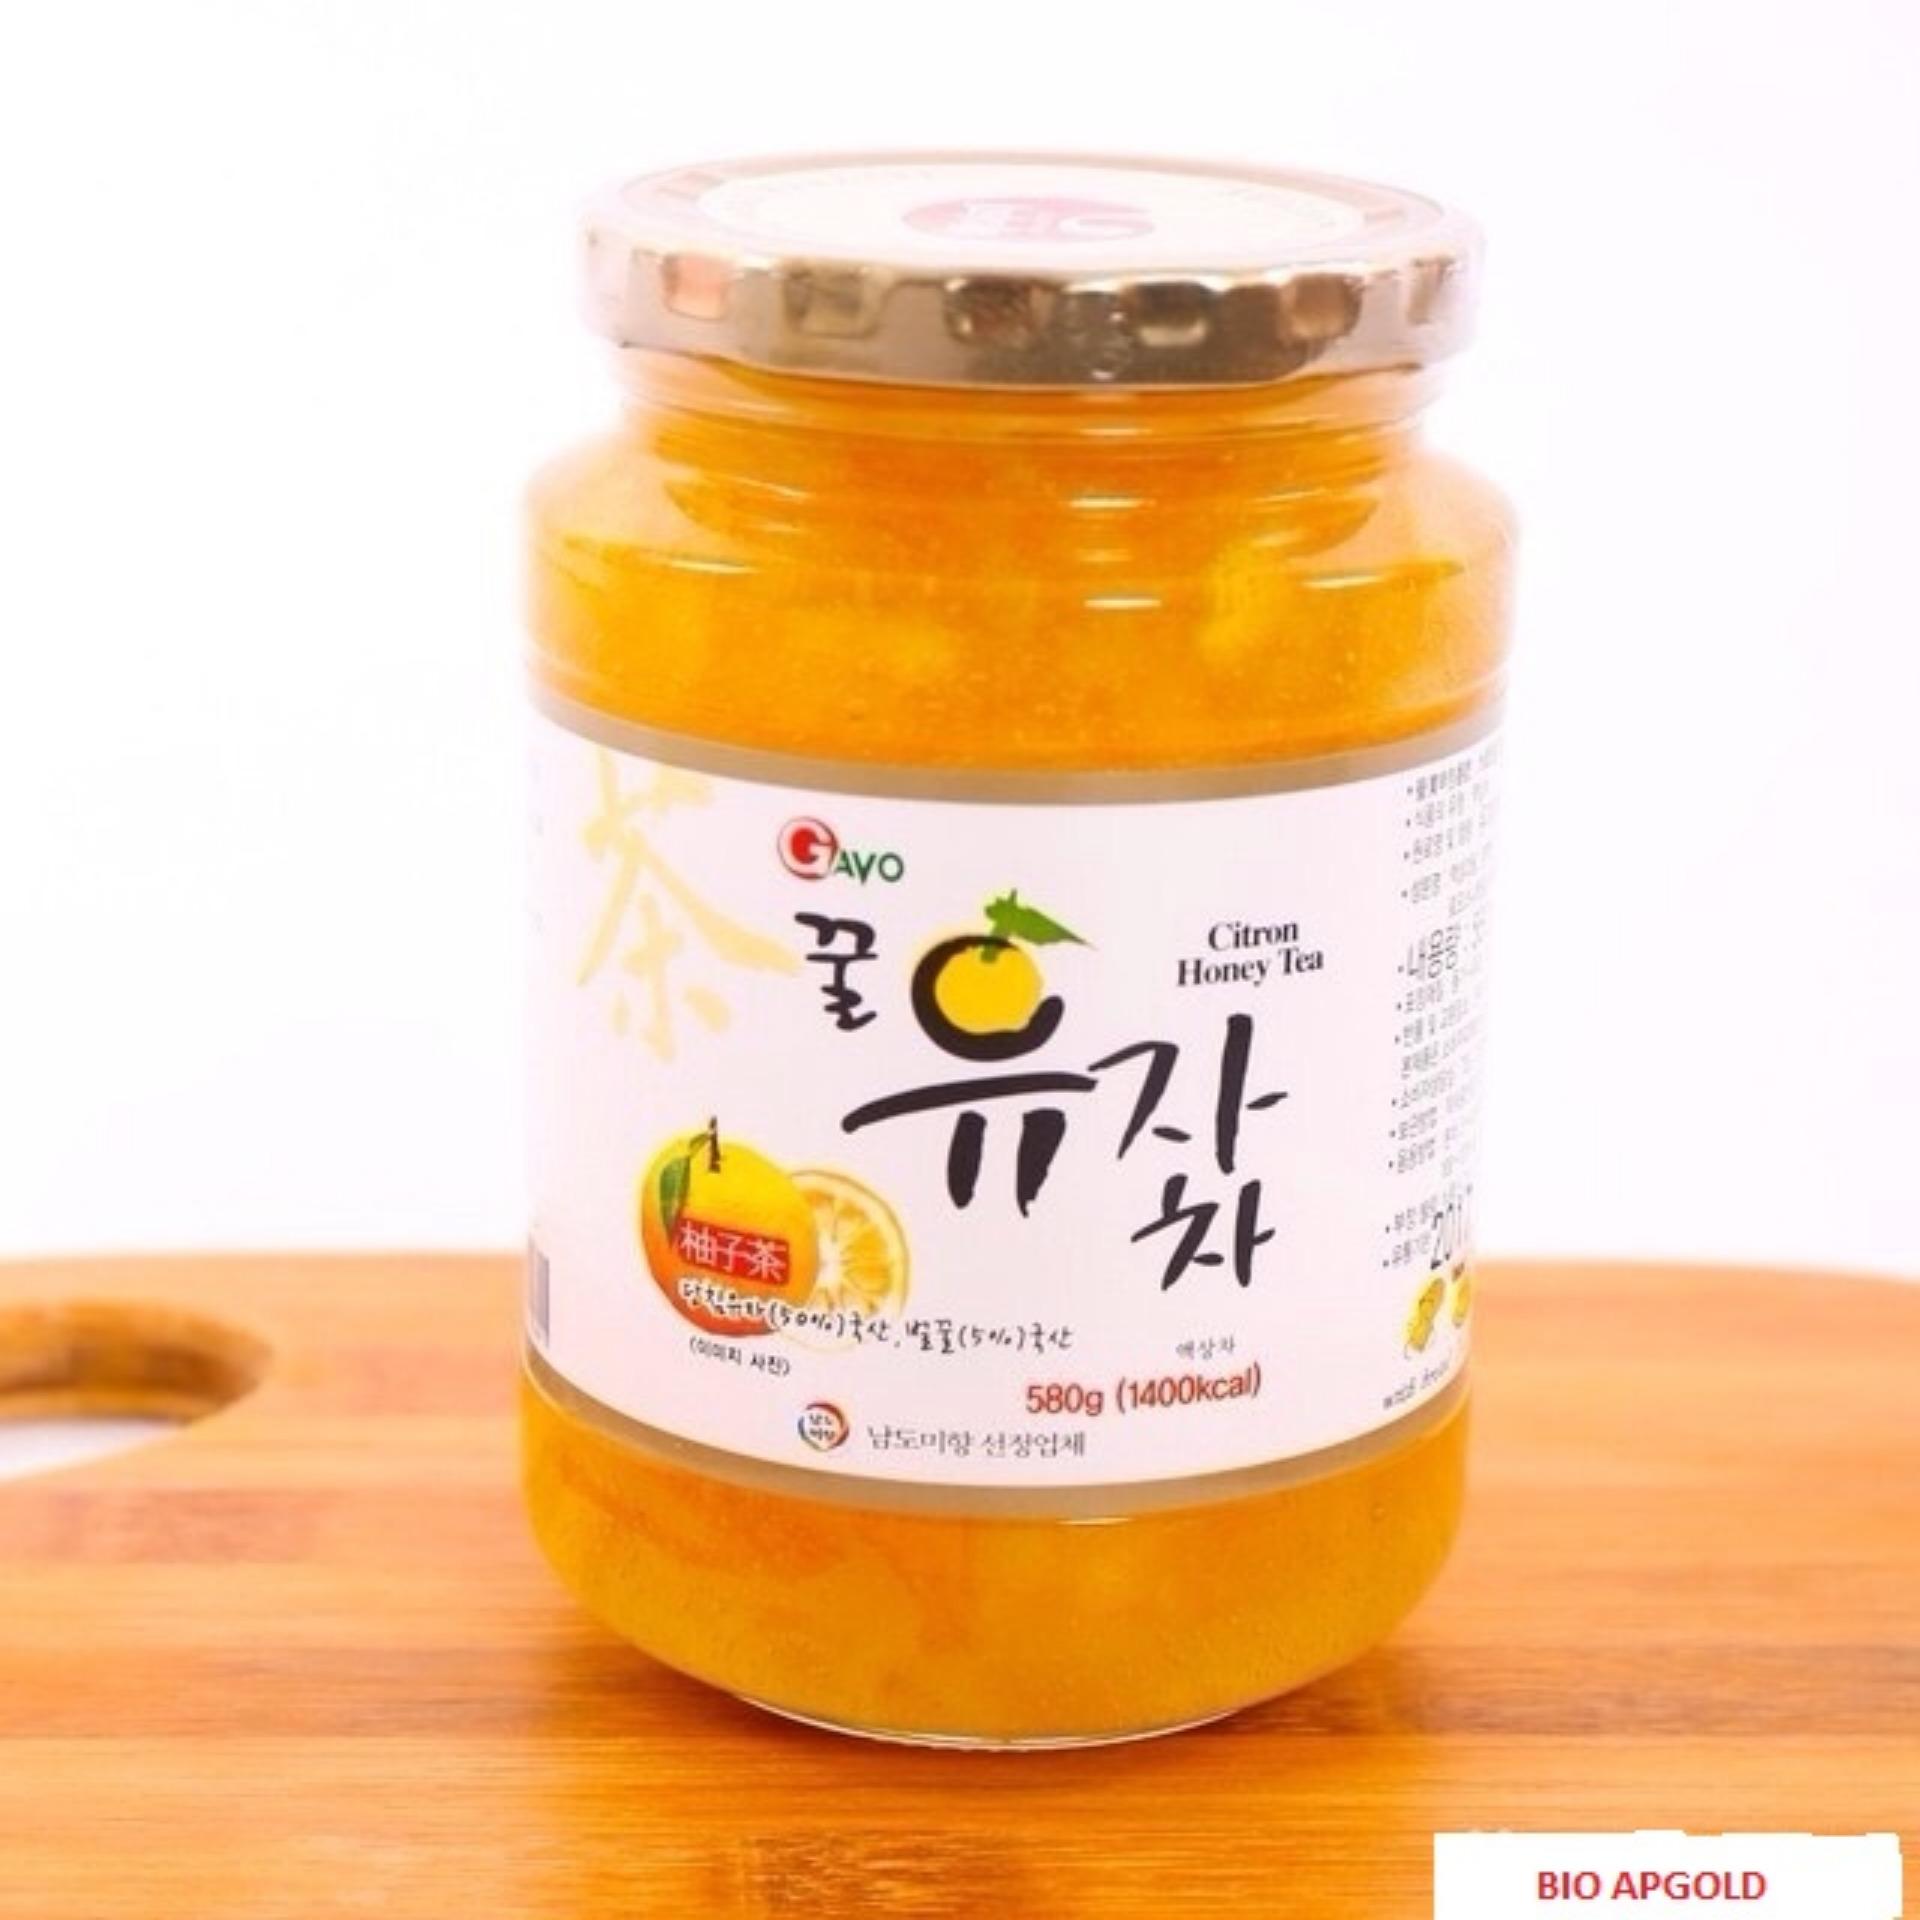 Chanh ngâm mật ong Hàn Quốc